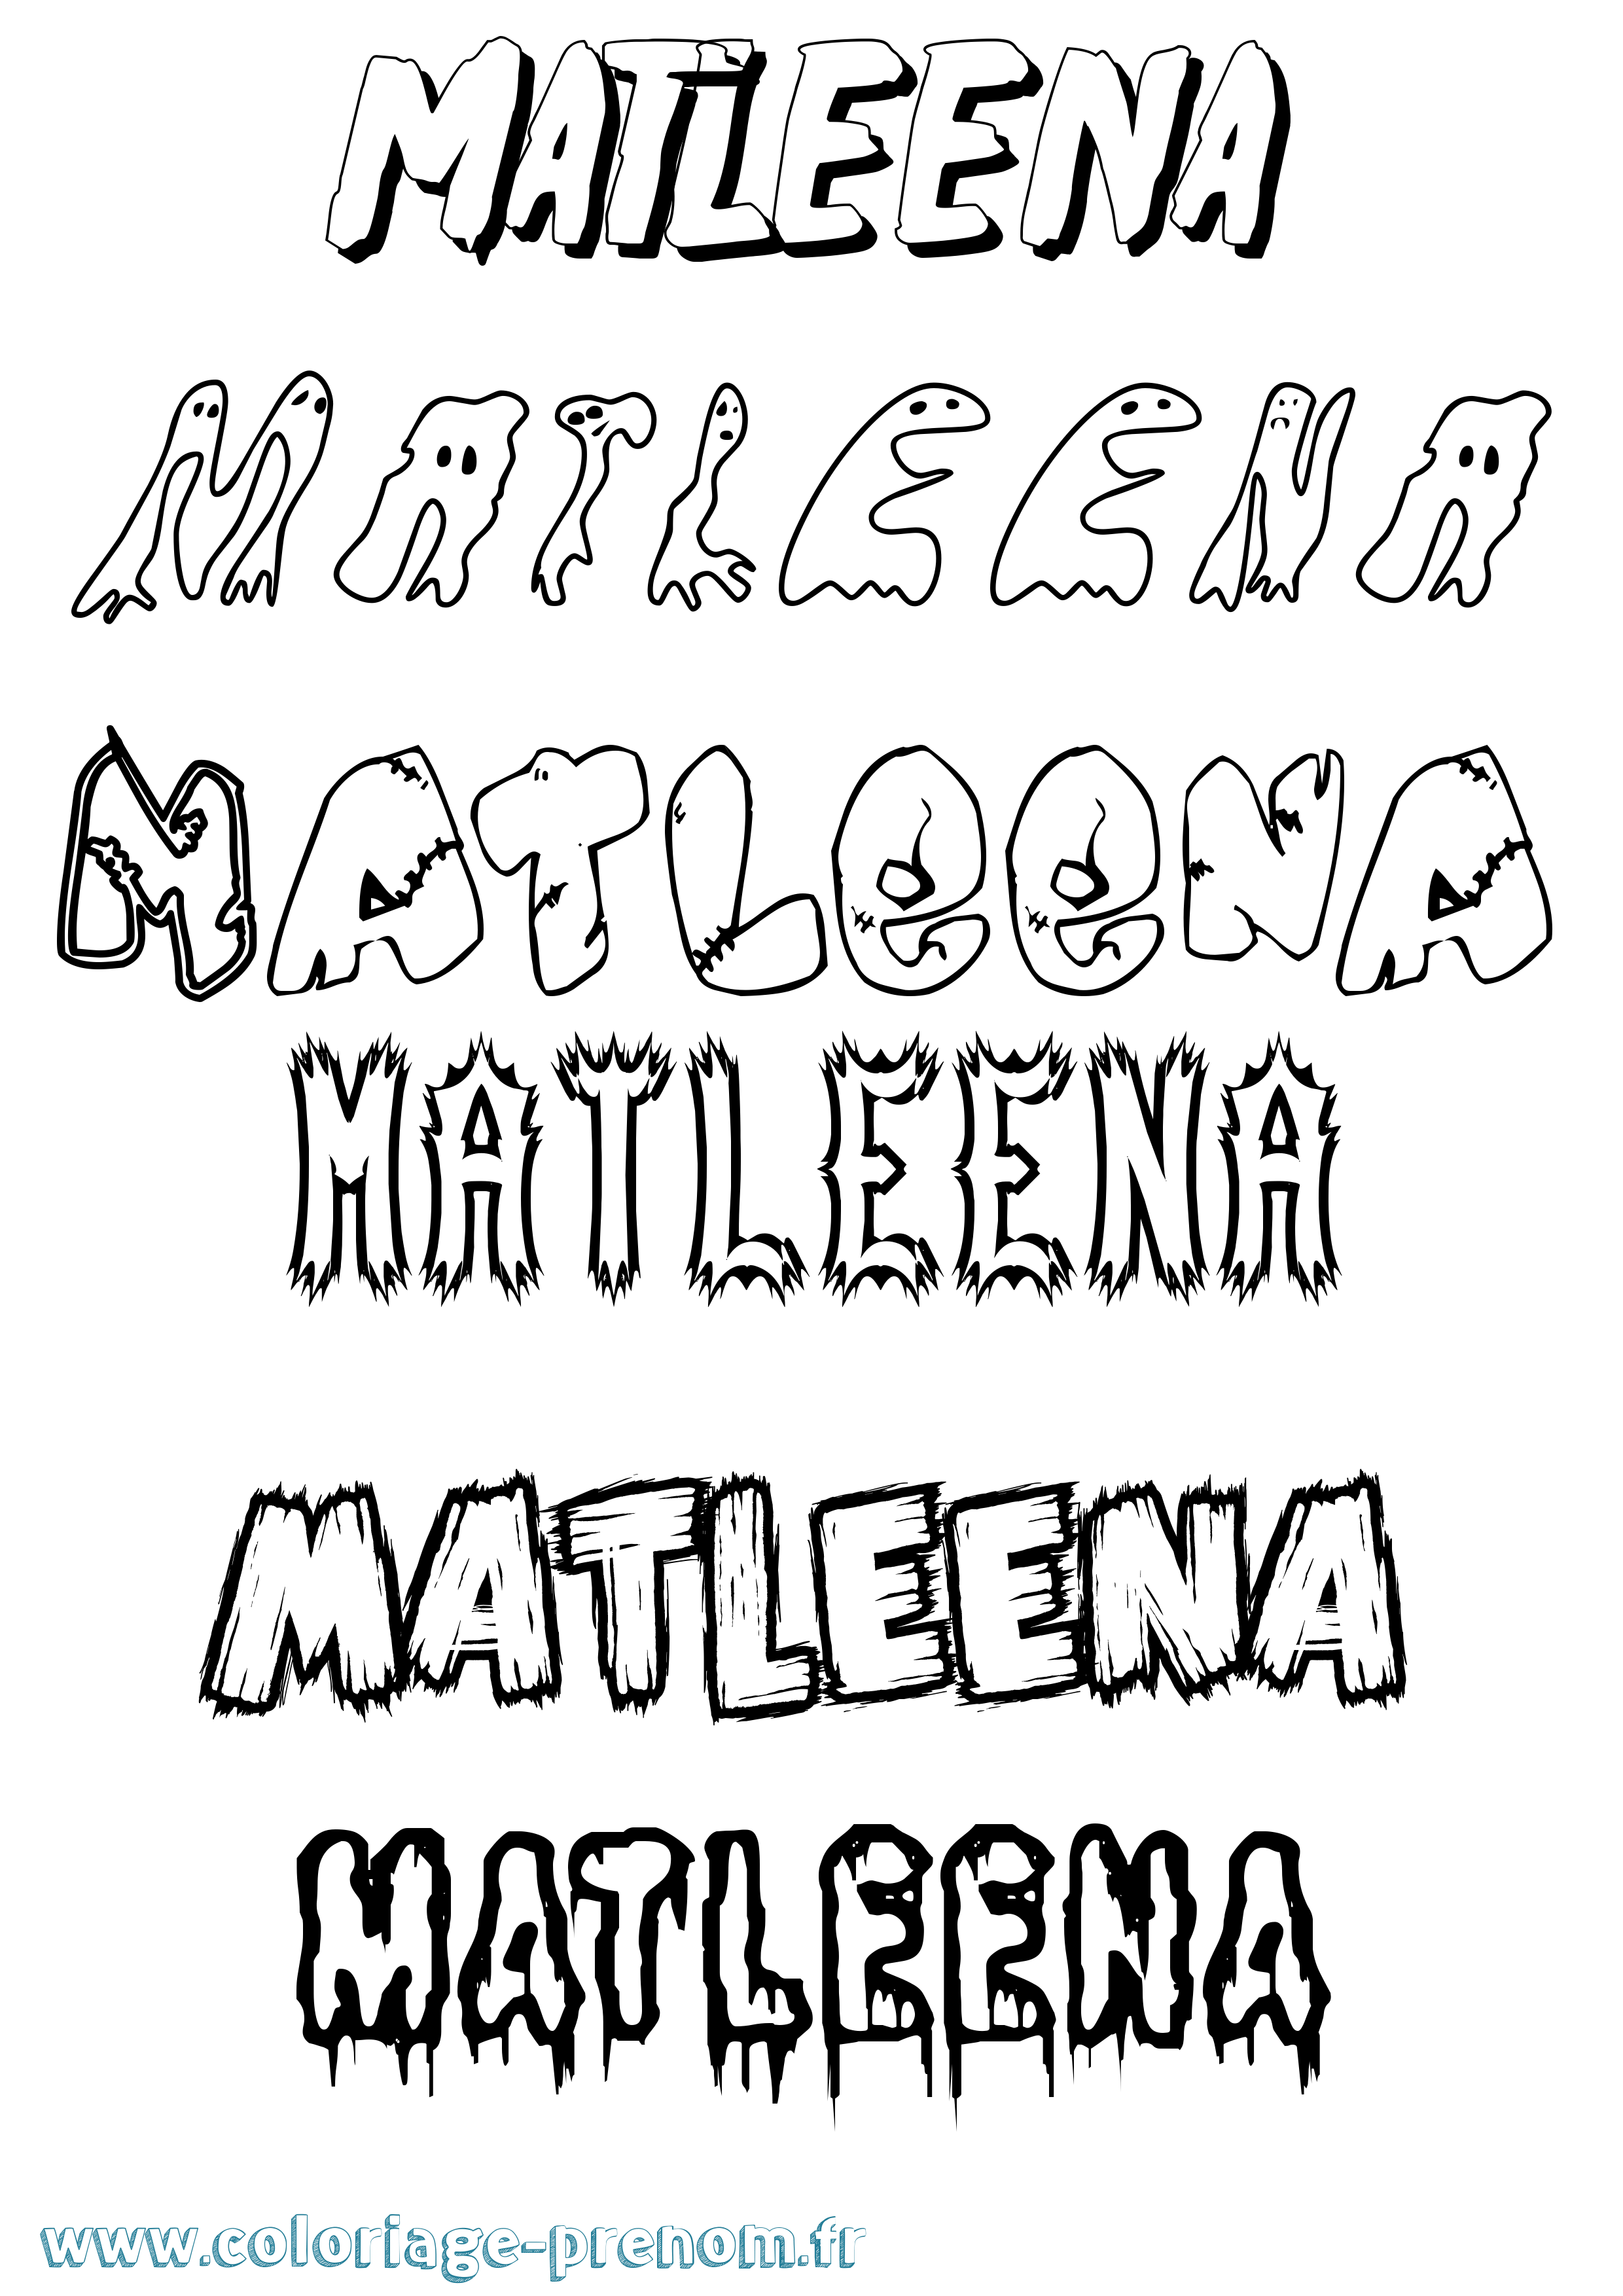 Coloriage prénom Matleena Frisson